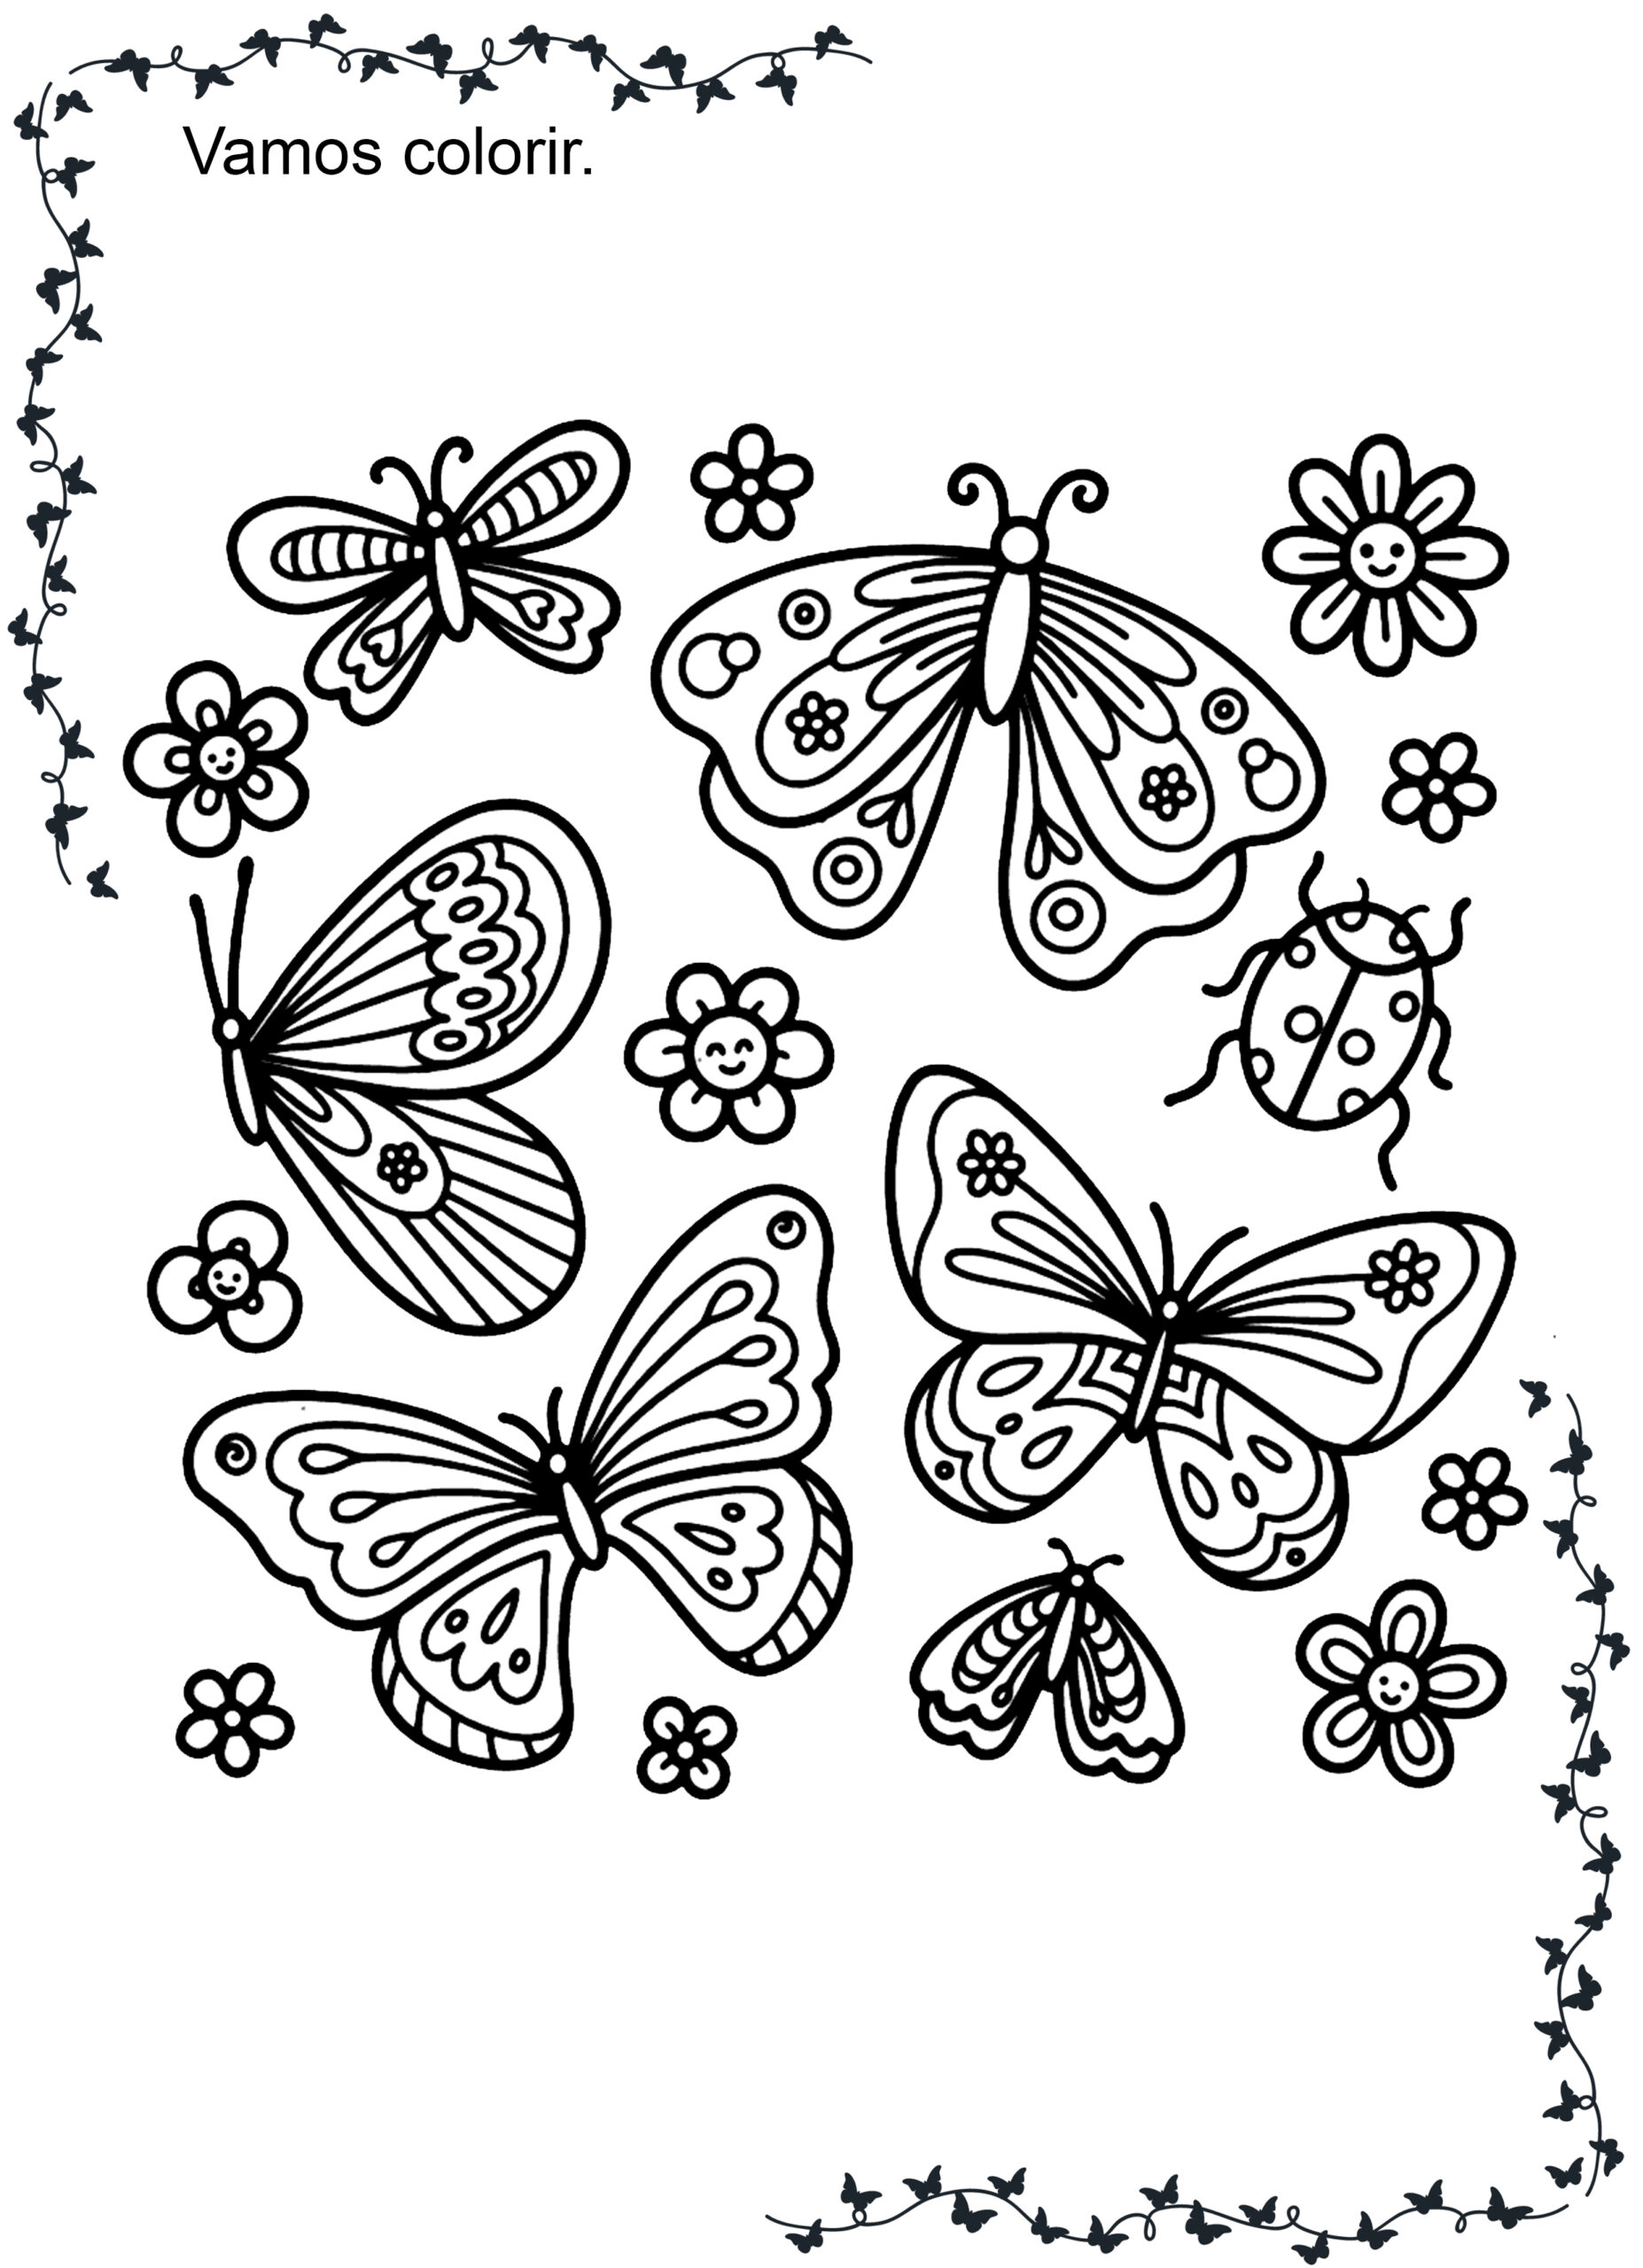 borboletas para colorir